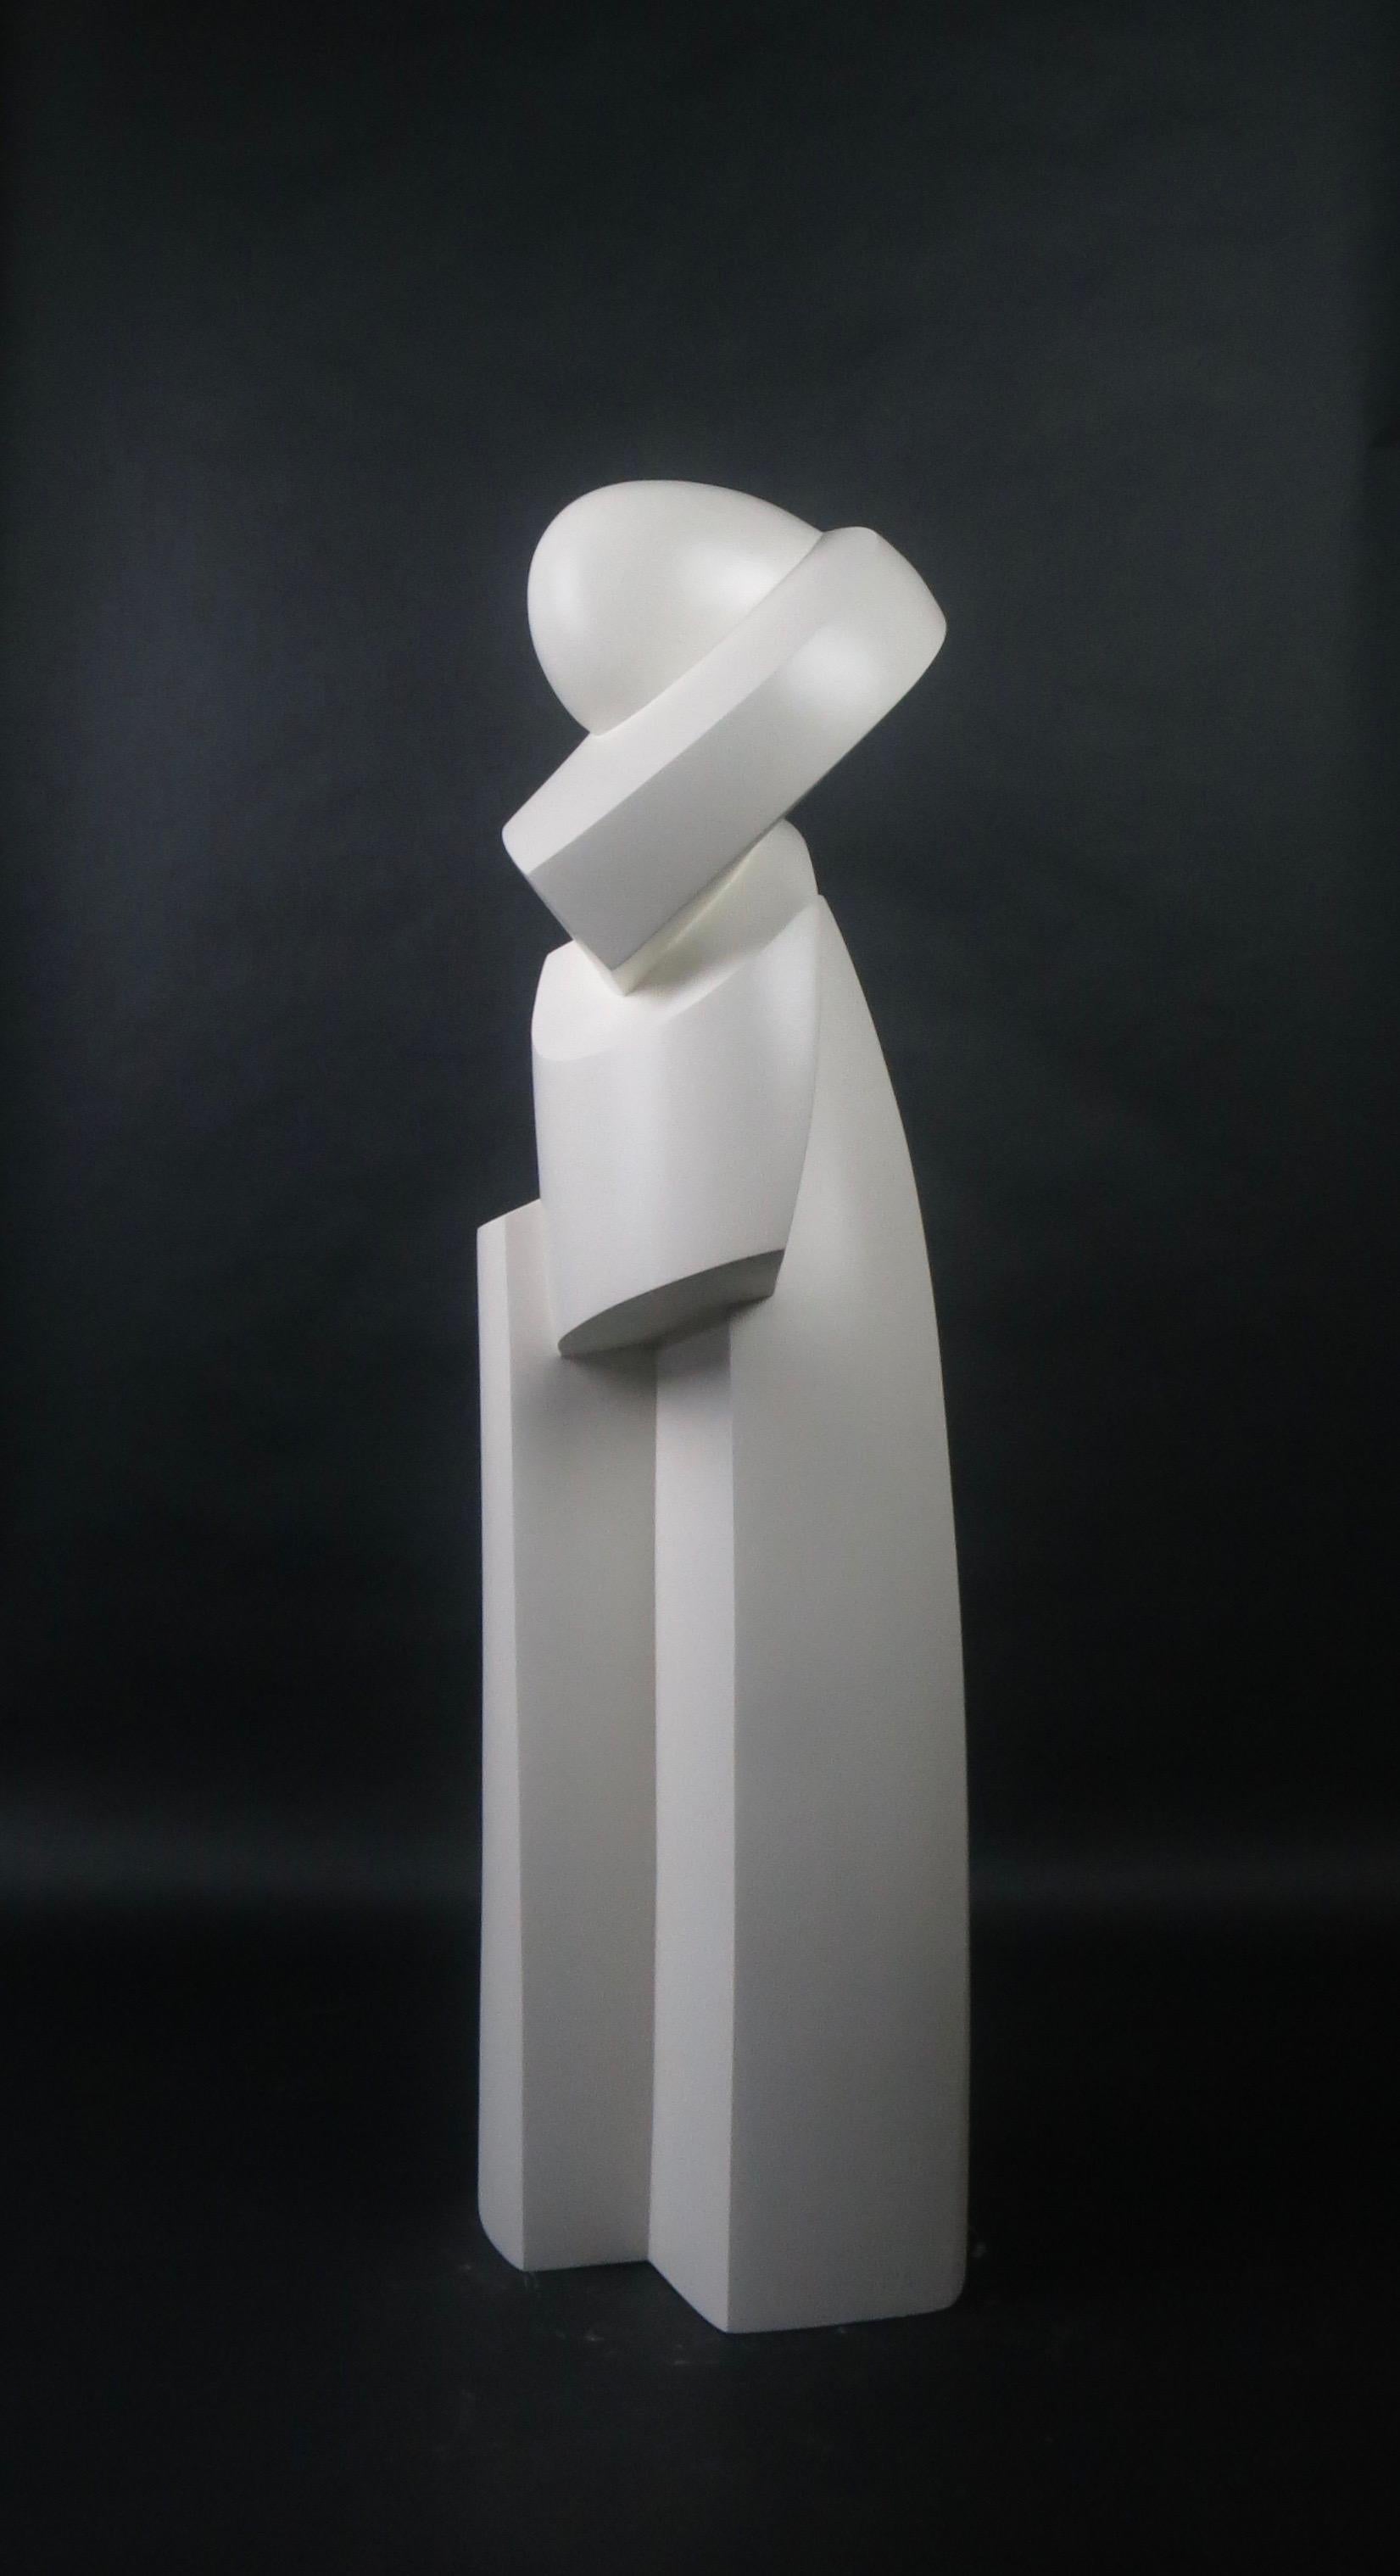 Tilleul, laqué blanc

En tant qu'artiste, je m'efforce de créer des sculptures élégantes qui capturent la véritable essence du sujet. La forme, la ligne et la surface sont utilisées comme langage visuel. La figure est abstraite en une forme